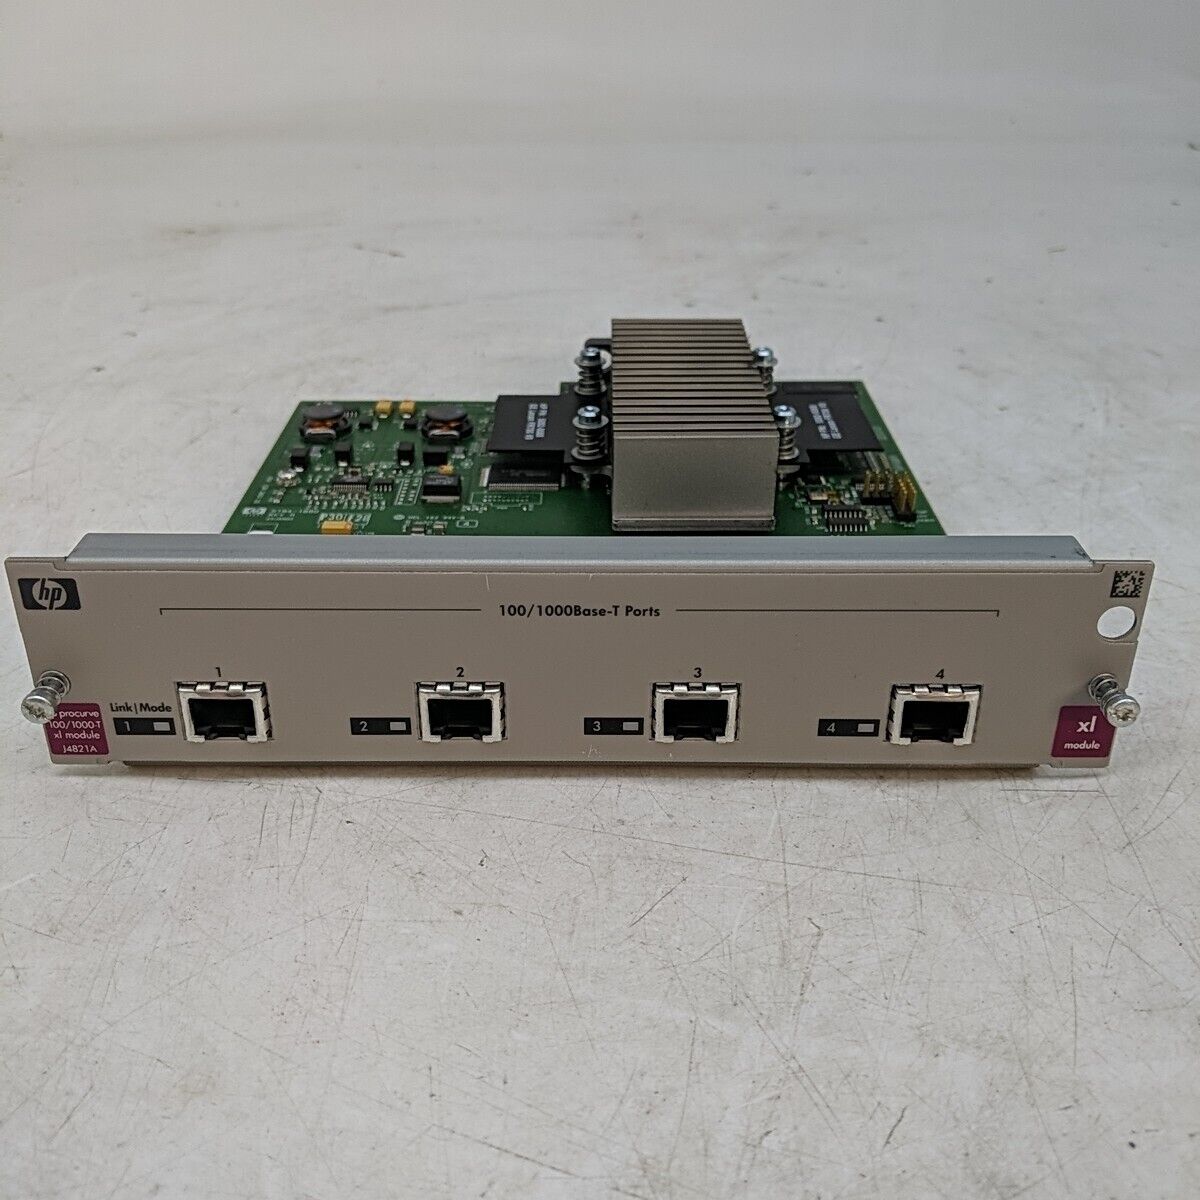 HP J4821A Procurve Switch XL 100/1000-T 4-Port Gigabit Ethernet Base-T XL Module